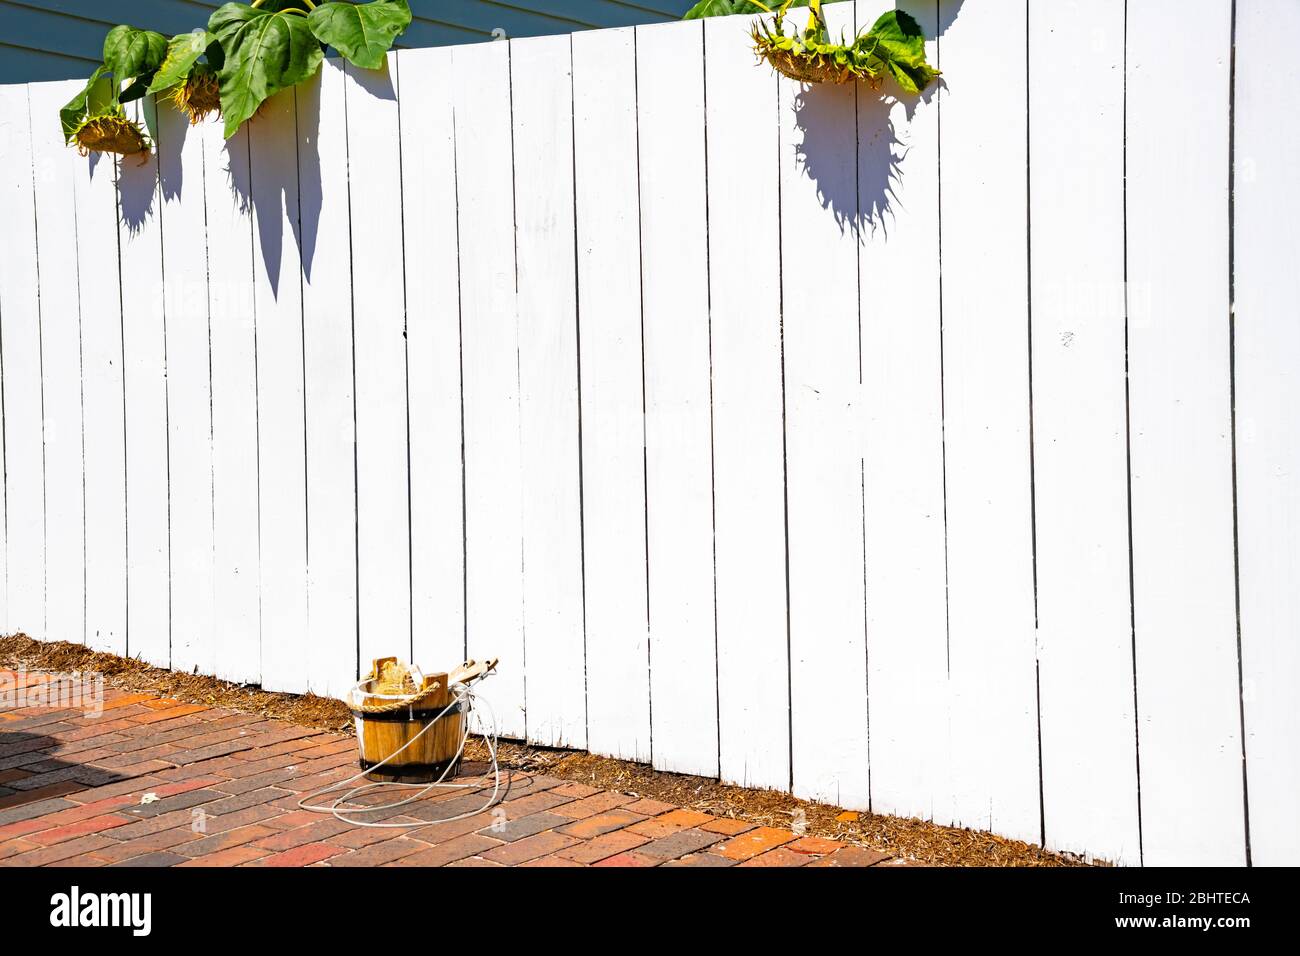 Tom Sawyer's Fence, Bucket of Whitewash, & Paintbrushes Stock Photo